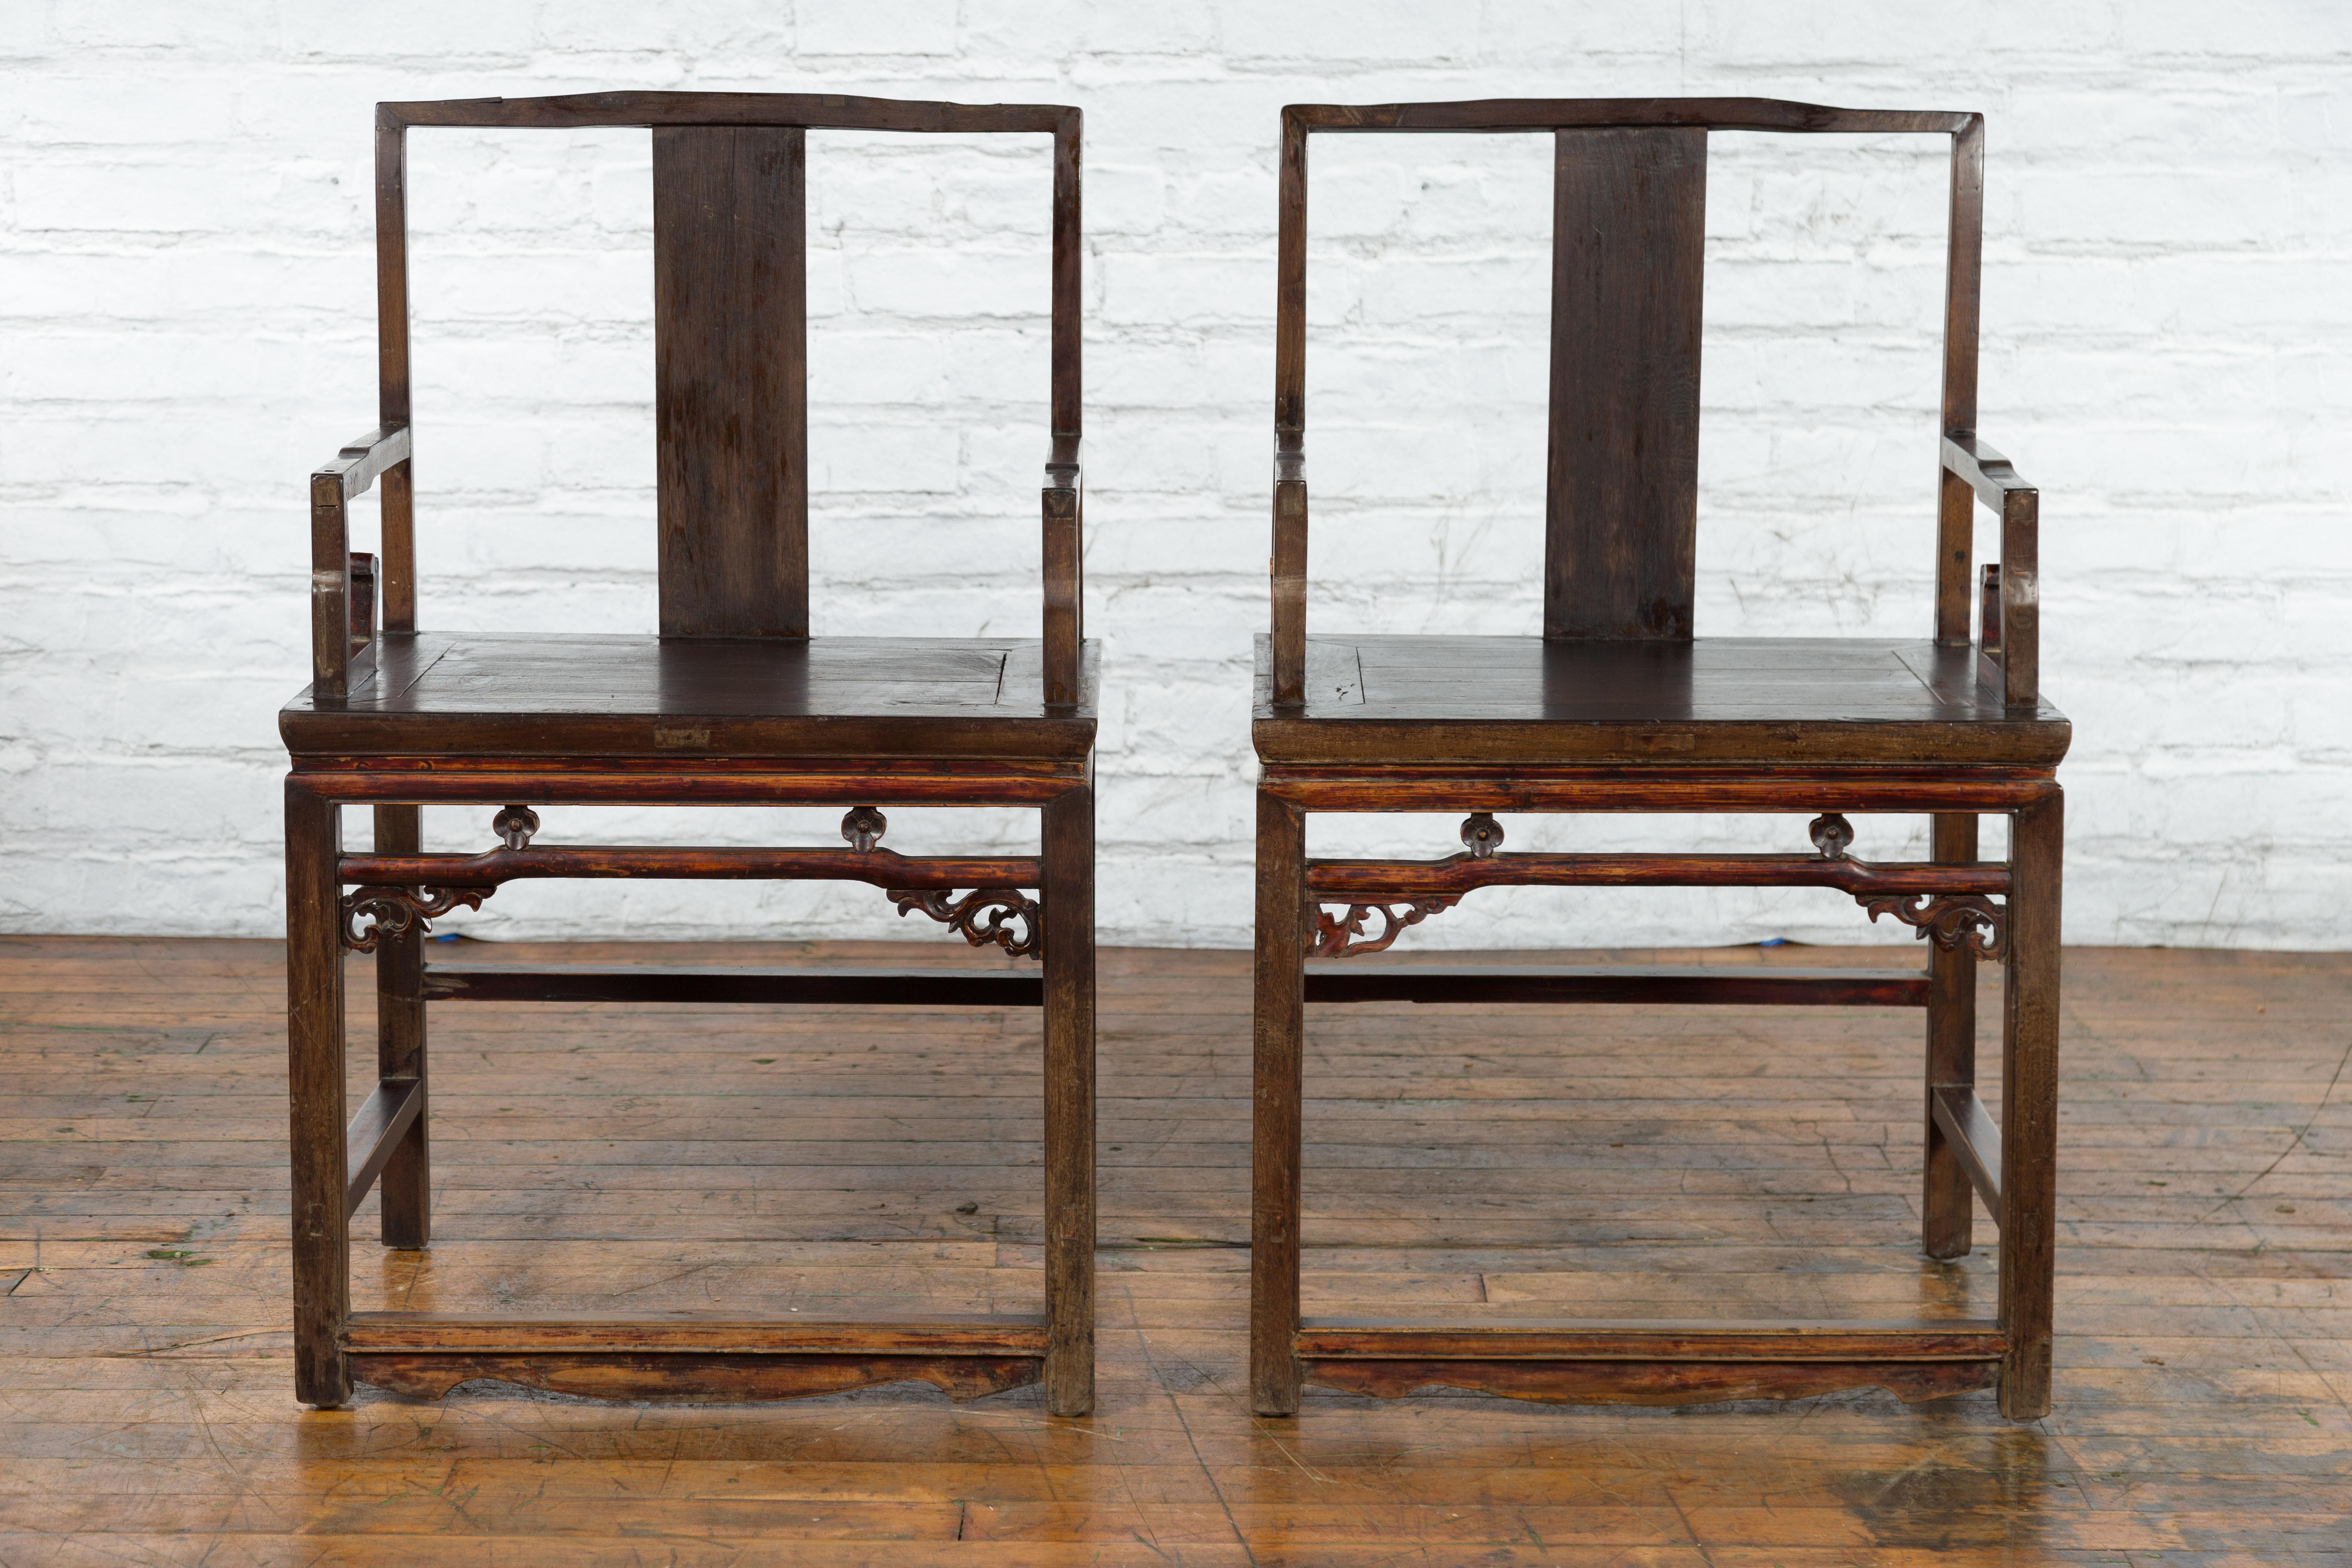 Ein Paar chinesische Sessel aus der Qing-Dynastie aus dem 19. Jahrhundert mit offenen Rückenlehnen, geschnitzten Schürzen und niedrigen Bahren. Dieses Sesselpaar wurde in China während der Qing-Dynastie im 19. Jahrhundert hergestellt und zeichnet